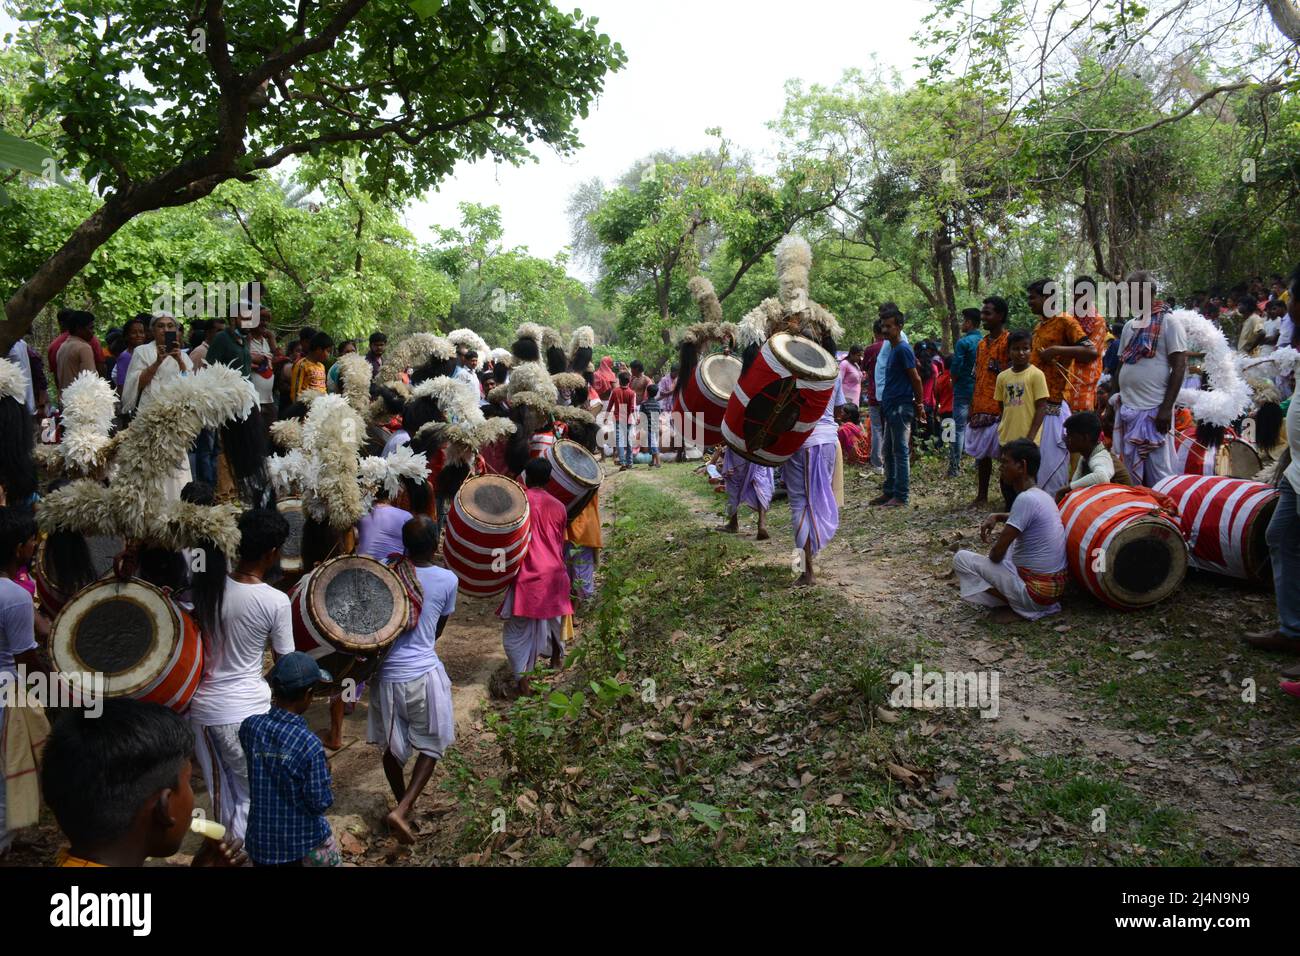 16. April 2022, Santiniketan, Westbengalen, Indien: Dhakis sind traditionelle hinduistische Trommler, die während hinduistischer Feste, vor allem in Bengalen, die Dhak (Trommel) spielen. Das Dhak ist ein Schlaginstrument, es ist eine Barrel-Trommel aus Mangoholz. Die Trommelmembran besteht aus Büffelhaut und Ziegenleder, sie wird am Hals aufgehängt, an der Taille gebunden und auf dem Schoß oder dem Boden gehalten, und wird in der Regel mit Holzstäben gespielt. Die linke Seite ist beschichtet, um ein schwereres Geräusch zu erhalten. Es wird vor allem von der bengalischen Hindu-Gemeinde gespielt. Dieses Instrument ist in Westbengalen zu finden und wird meist in jeder hinduistischen Religion verwendet Stockfoto